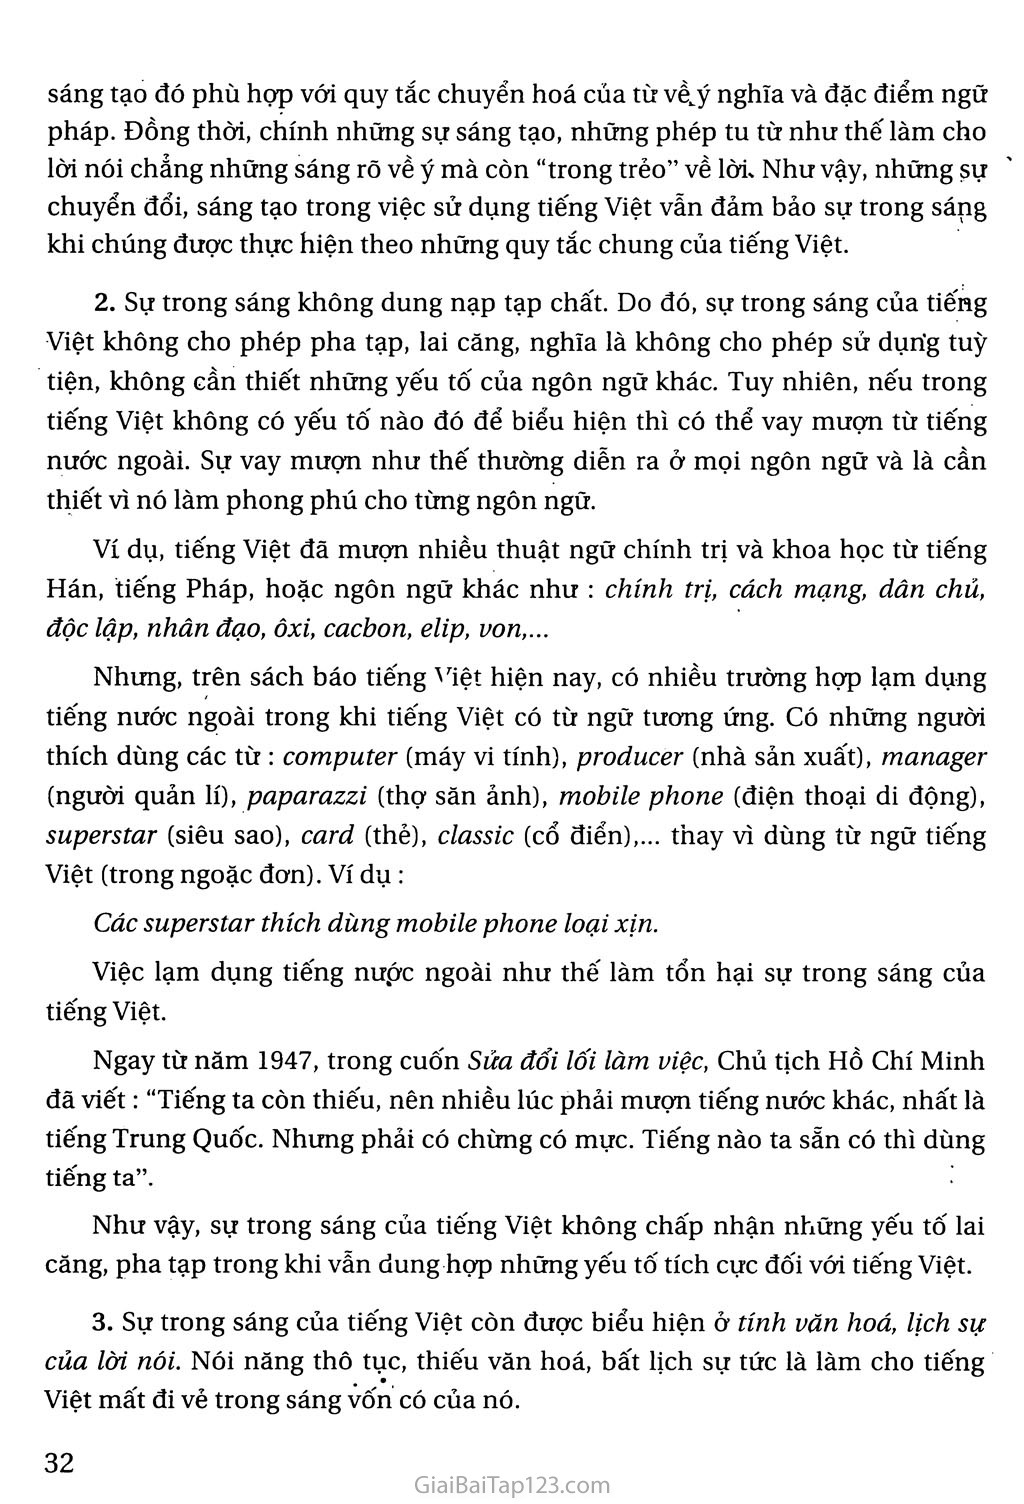 Giữ gìn sự trong sáng của Tiếng Việt trang 3